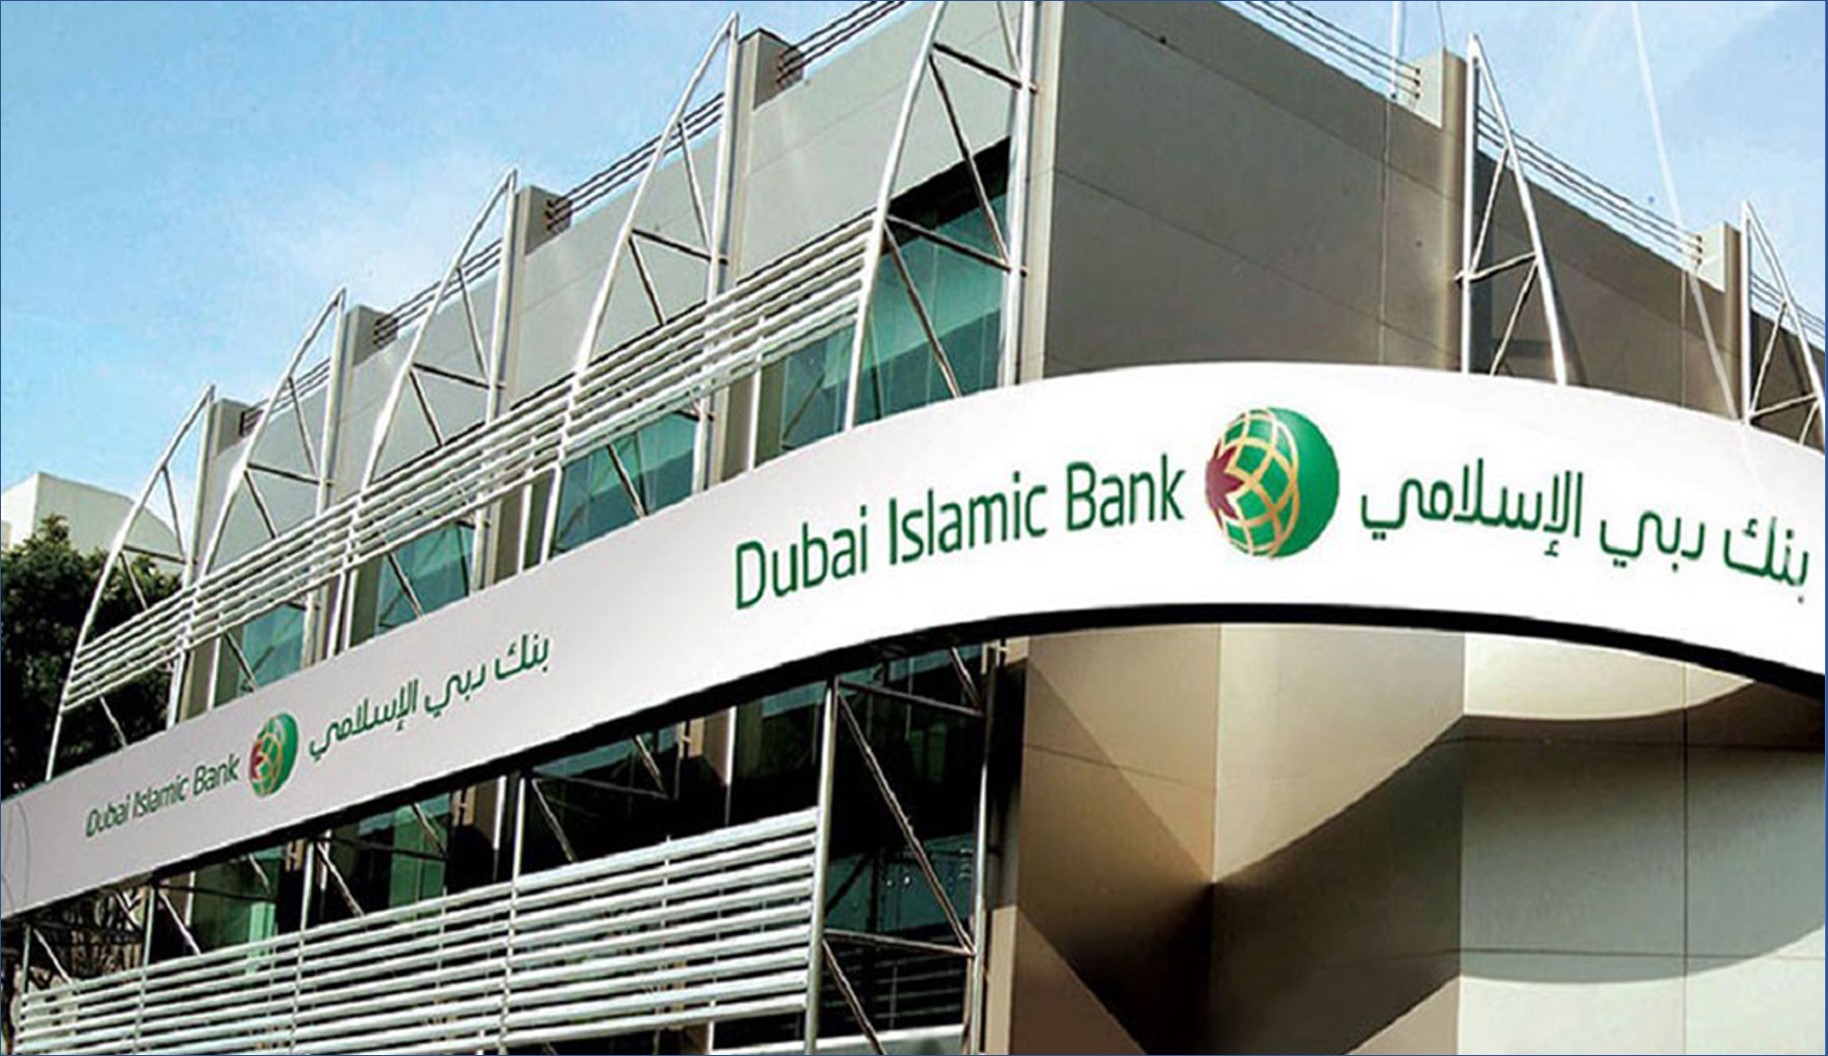 بنك دبي الاسلامي يعلن عن وظائف ادارية لجميع الجنسيات